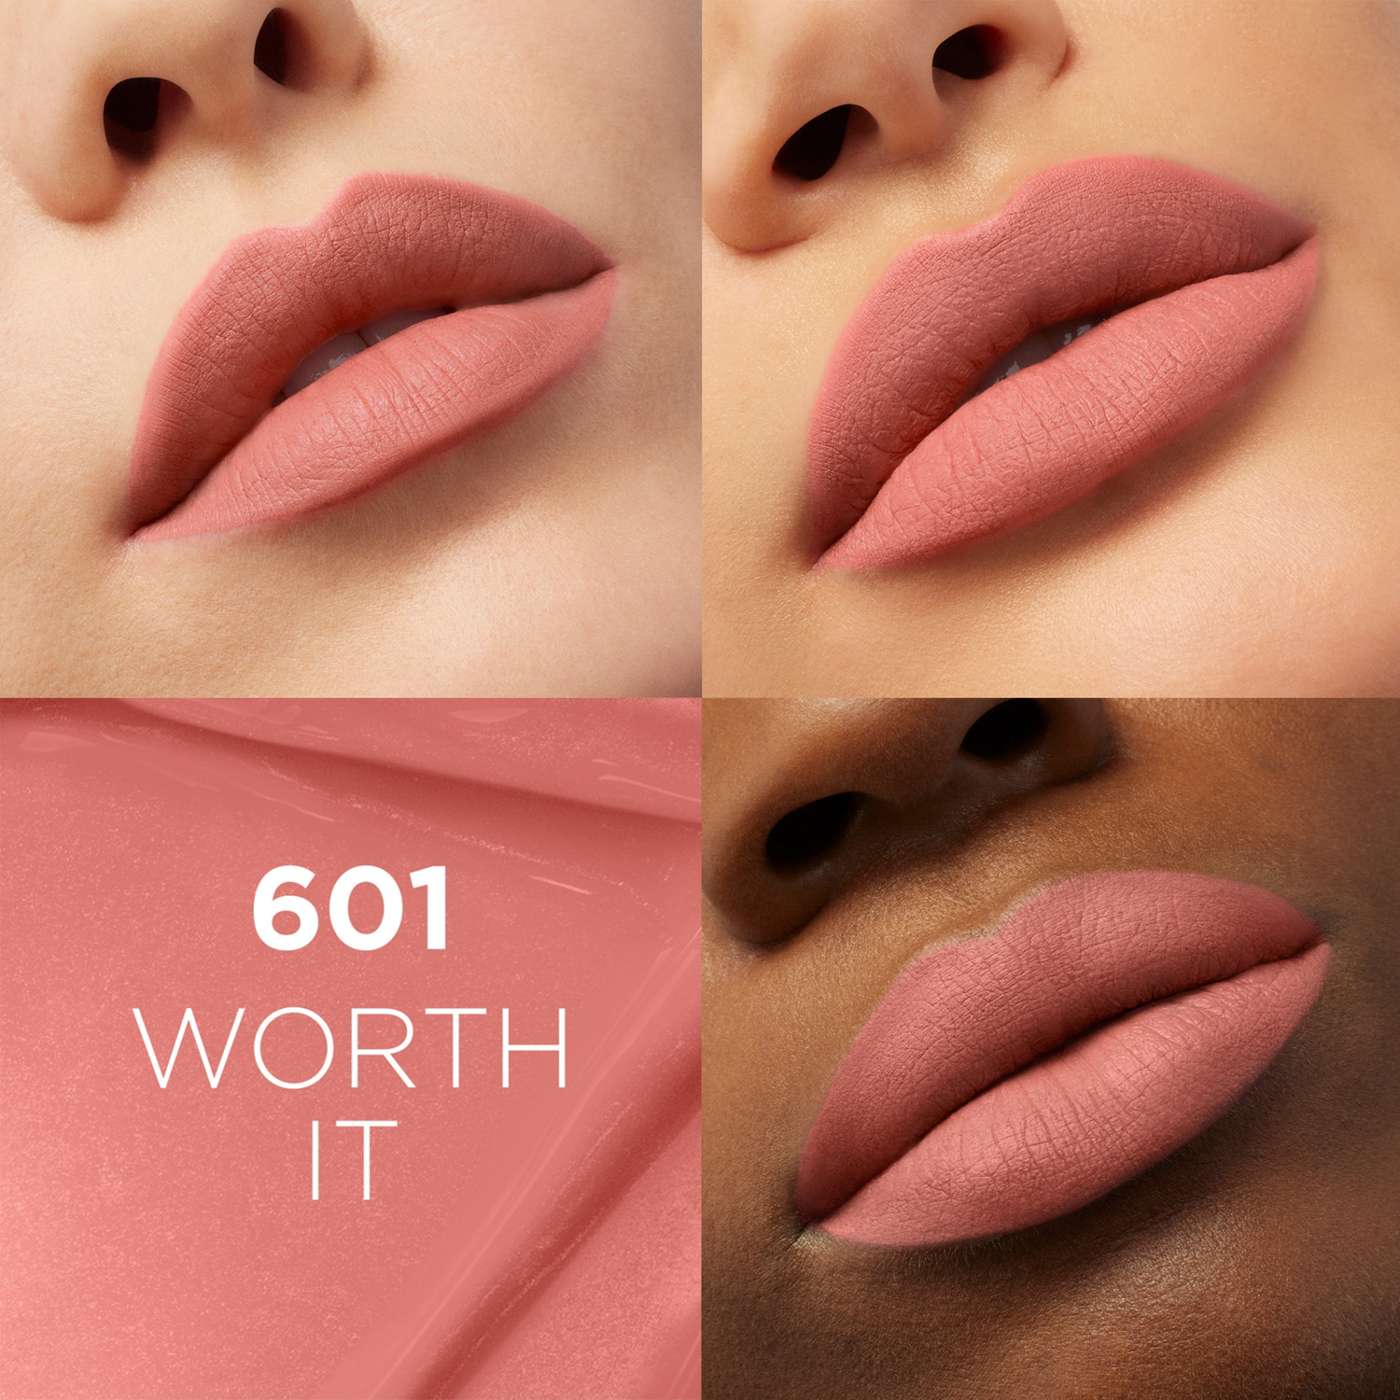 L'Oréal Paris Infallible Le Matte Resistance Liquid Lipstick - Worth It; image 5 of 6